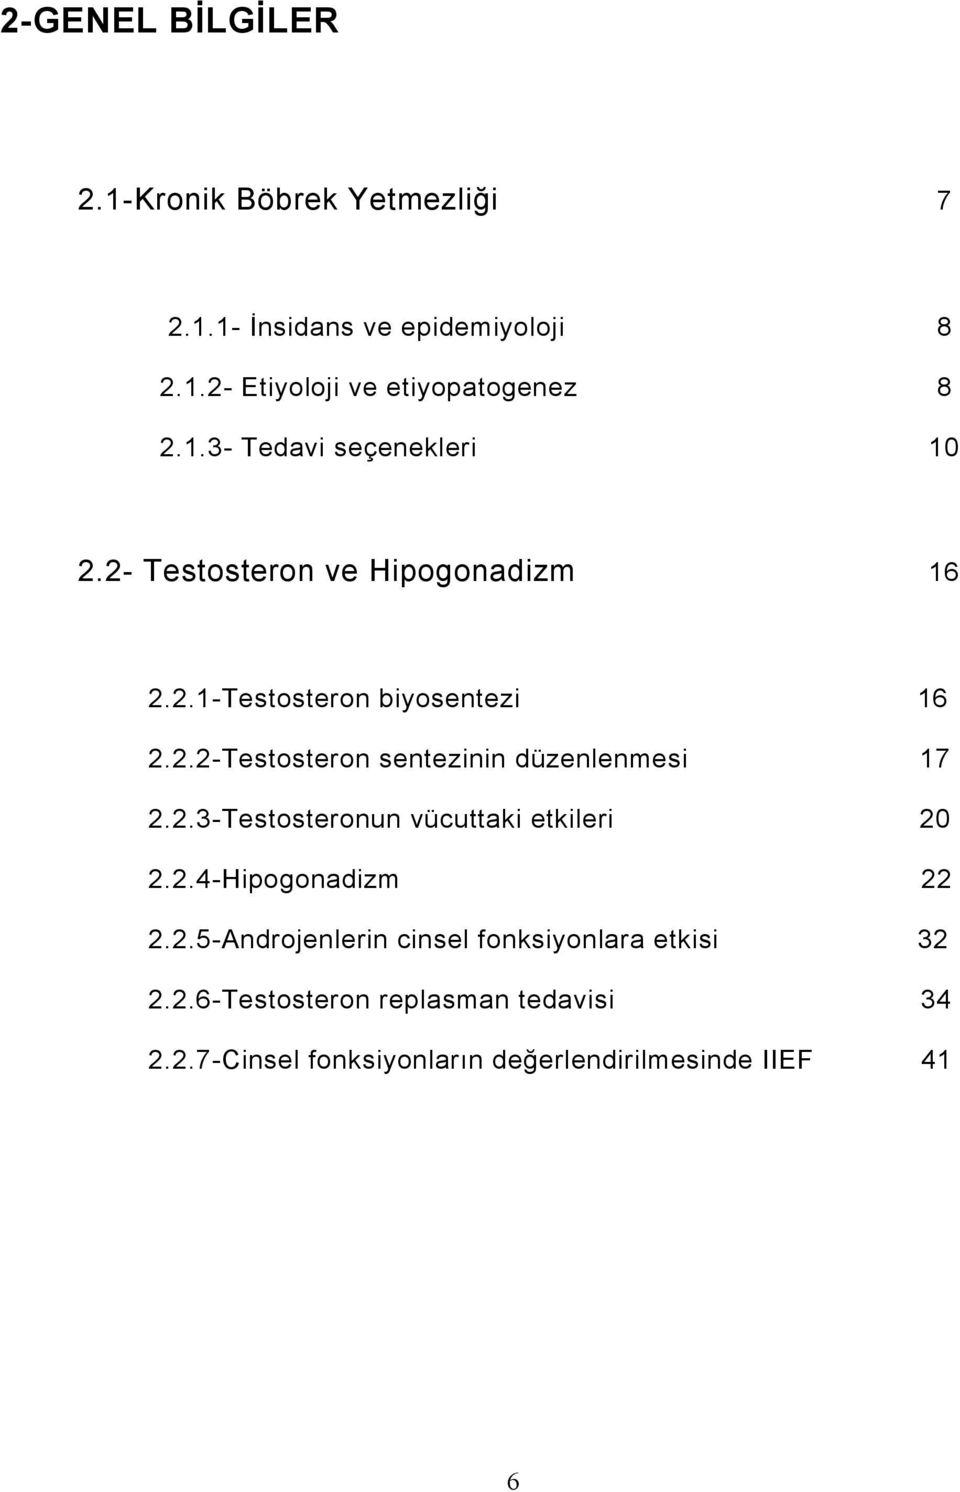 2.3-Testosteronun vücuttaki etkileri 20 2.2.4-Hipogonadizm 22 2.2.5-Androjenlerin cinsel fonksiyonlara etkisi 32 2.2.6-Testosteron replasman tedavisi 34 2.